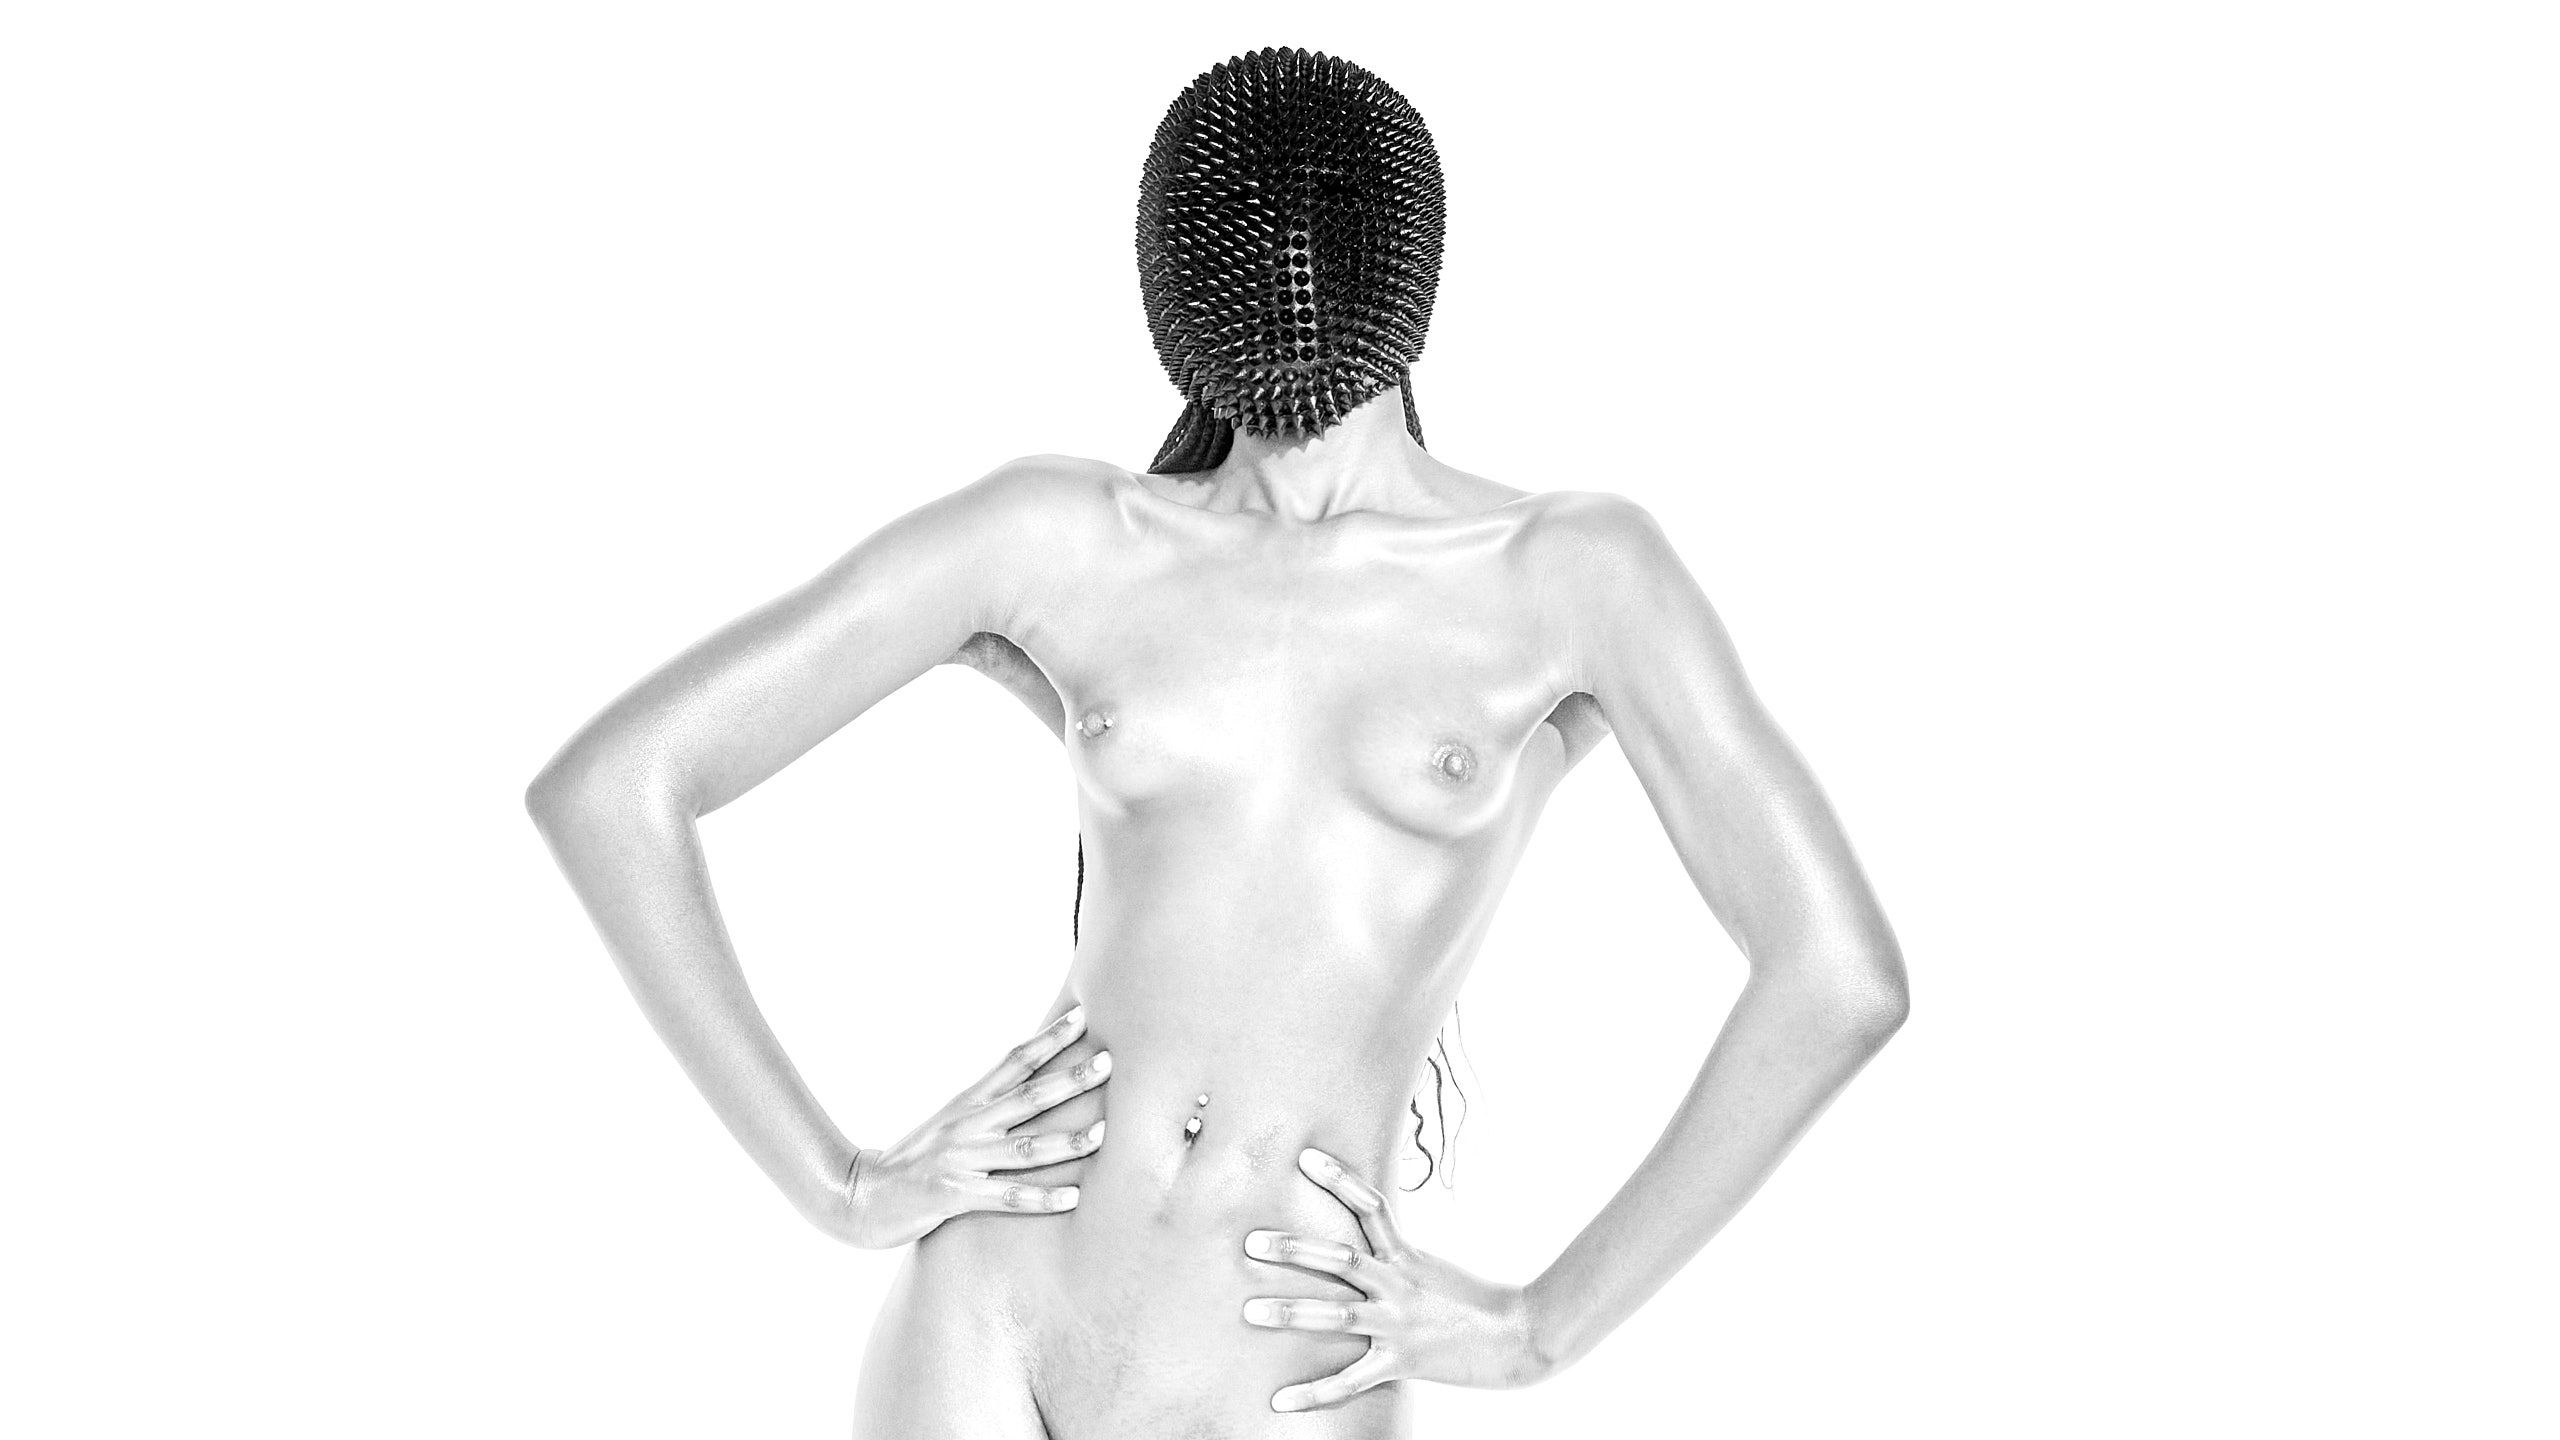 Silver Body 1 - NFT nude art by Cinaed Dane